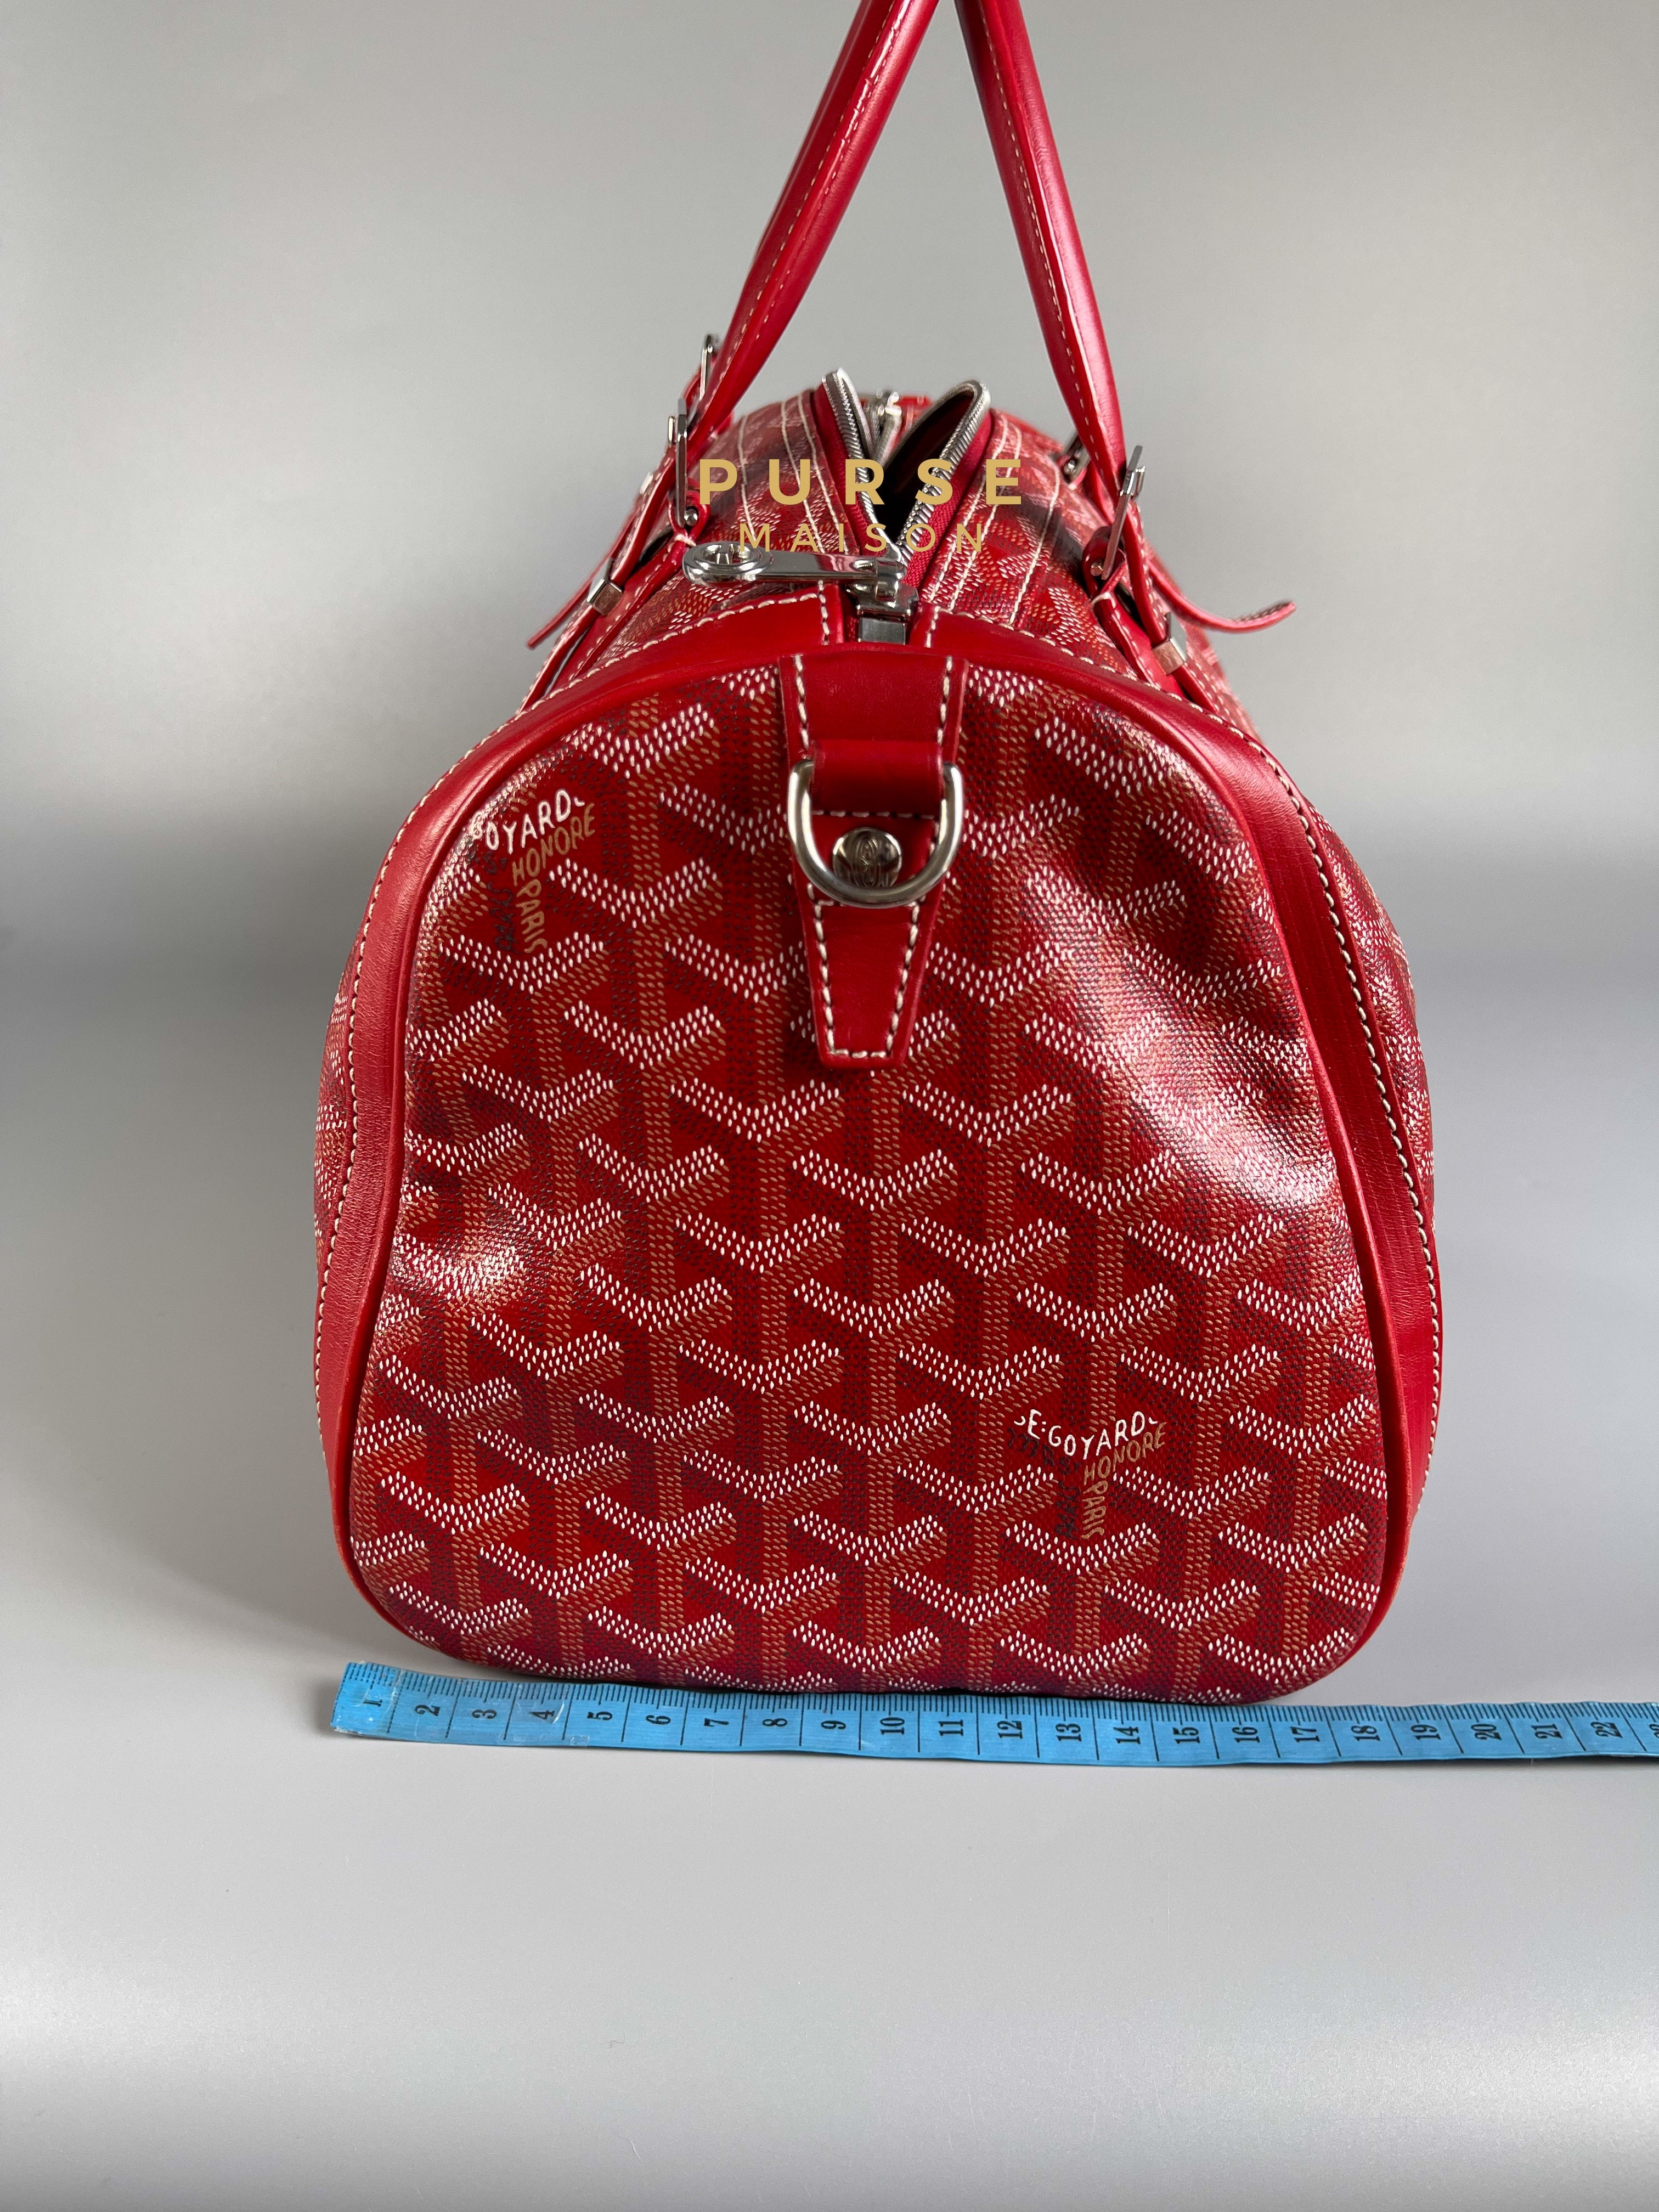 Goyard Croisiere 35 Coated Canvas Rouge | Purse Maison Luxury Bags Shop